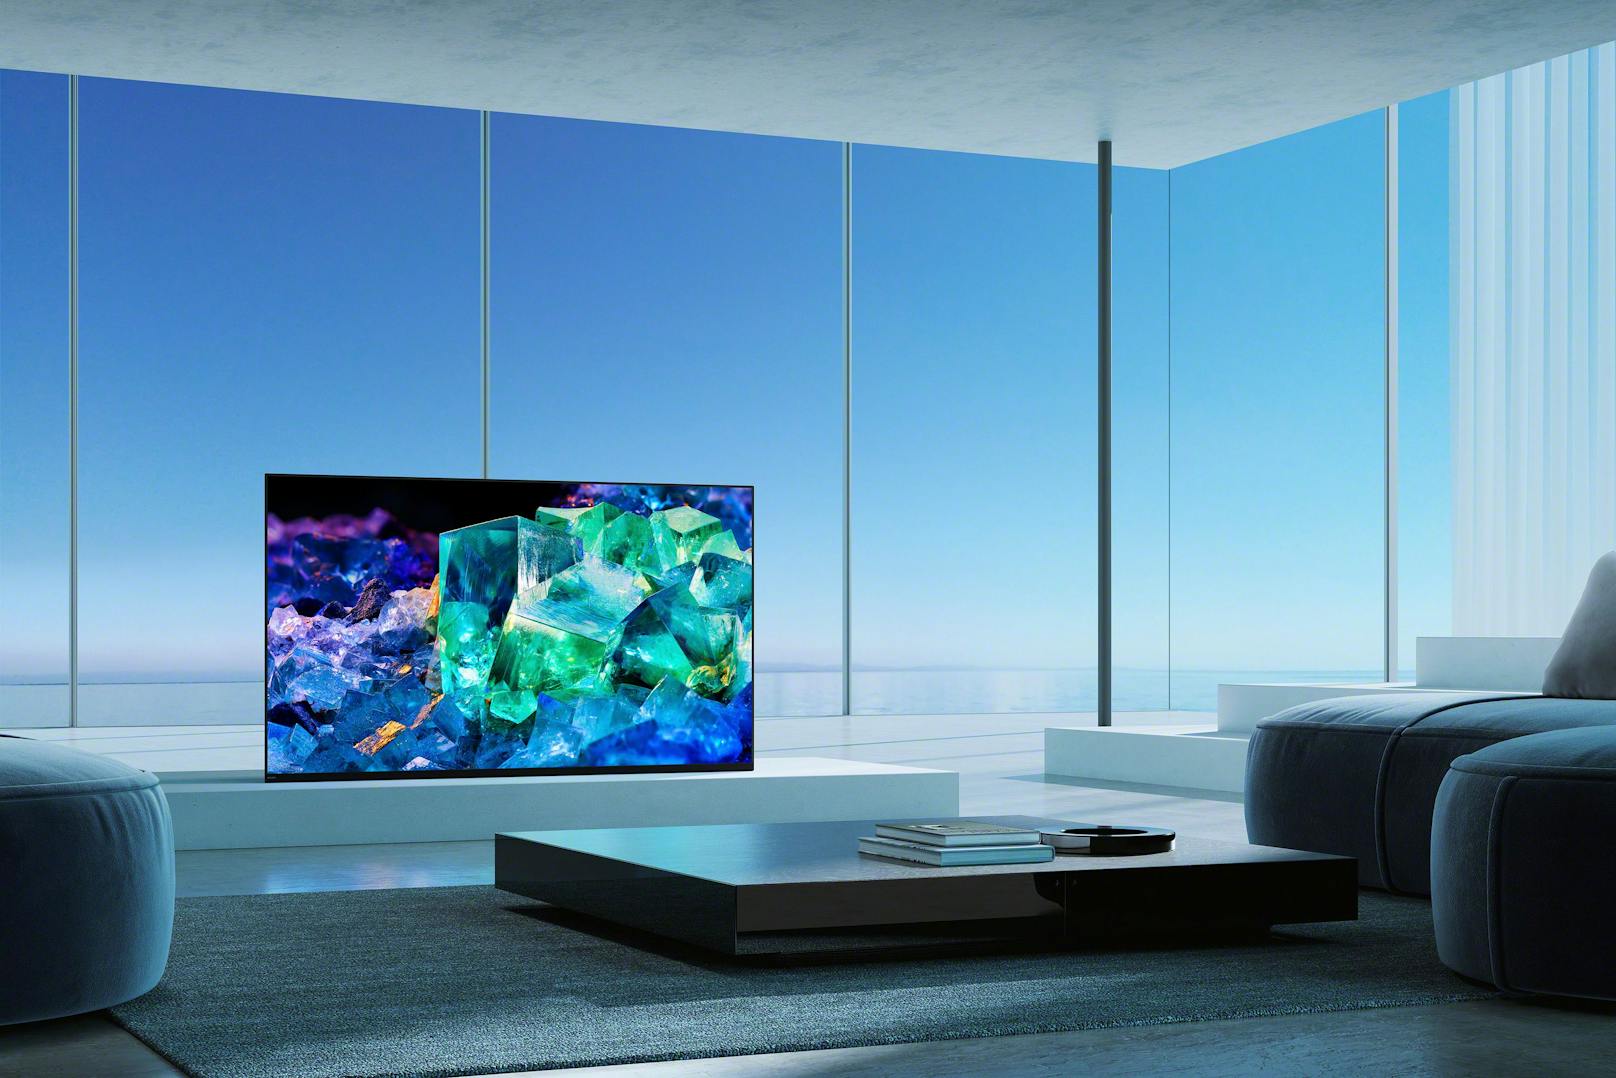 Der TV soll durch Quantum Dot knallige Farben trotz hoher Helligkeit und einen größeren Betrachtungswinkel als herkömmliche OLEDs bieten können.